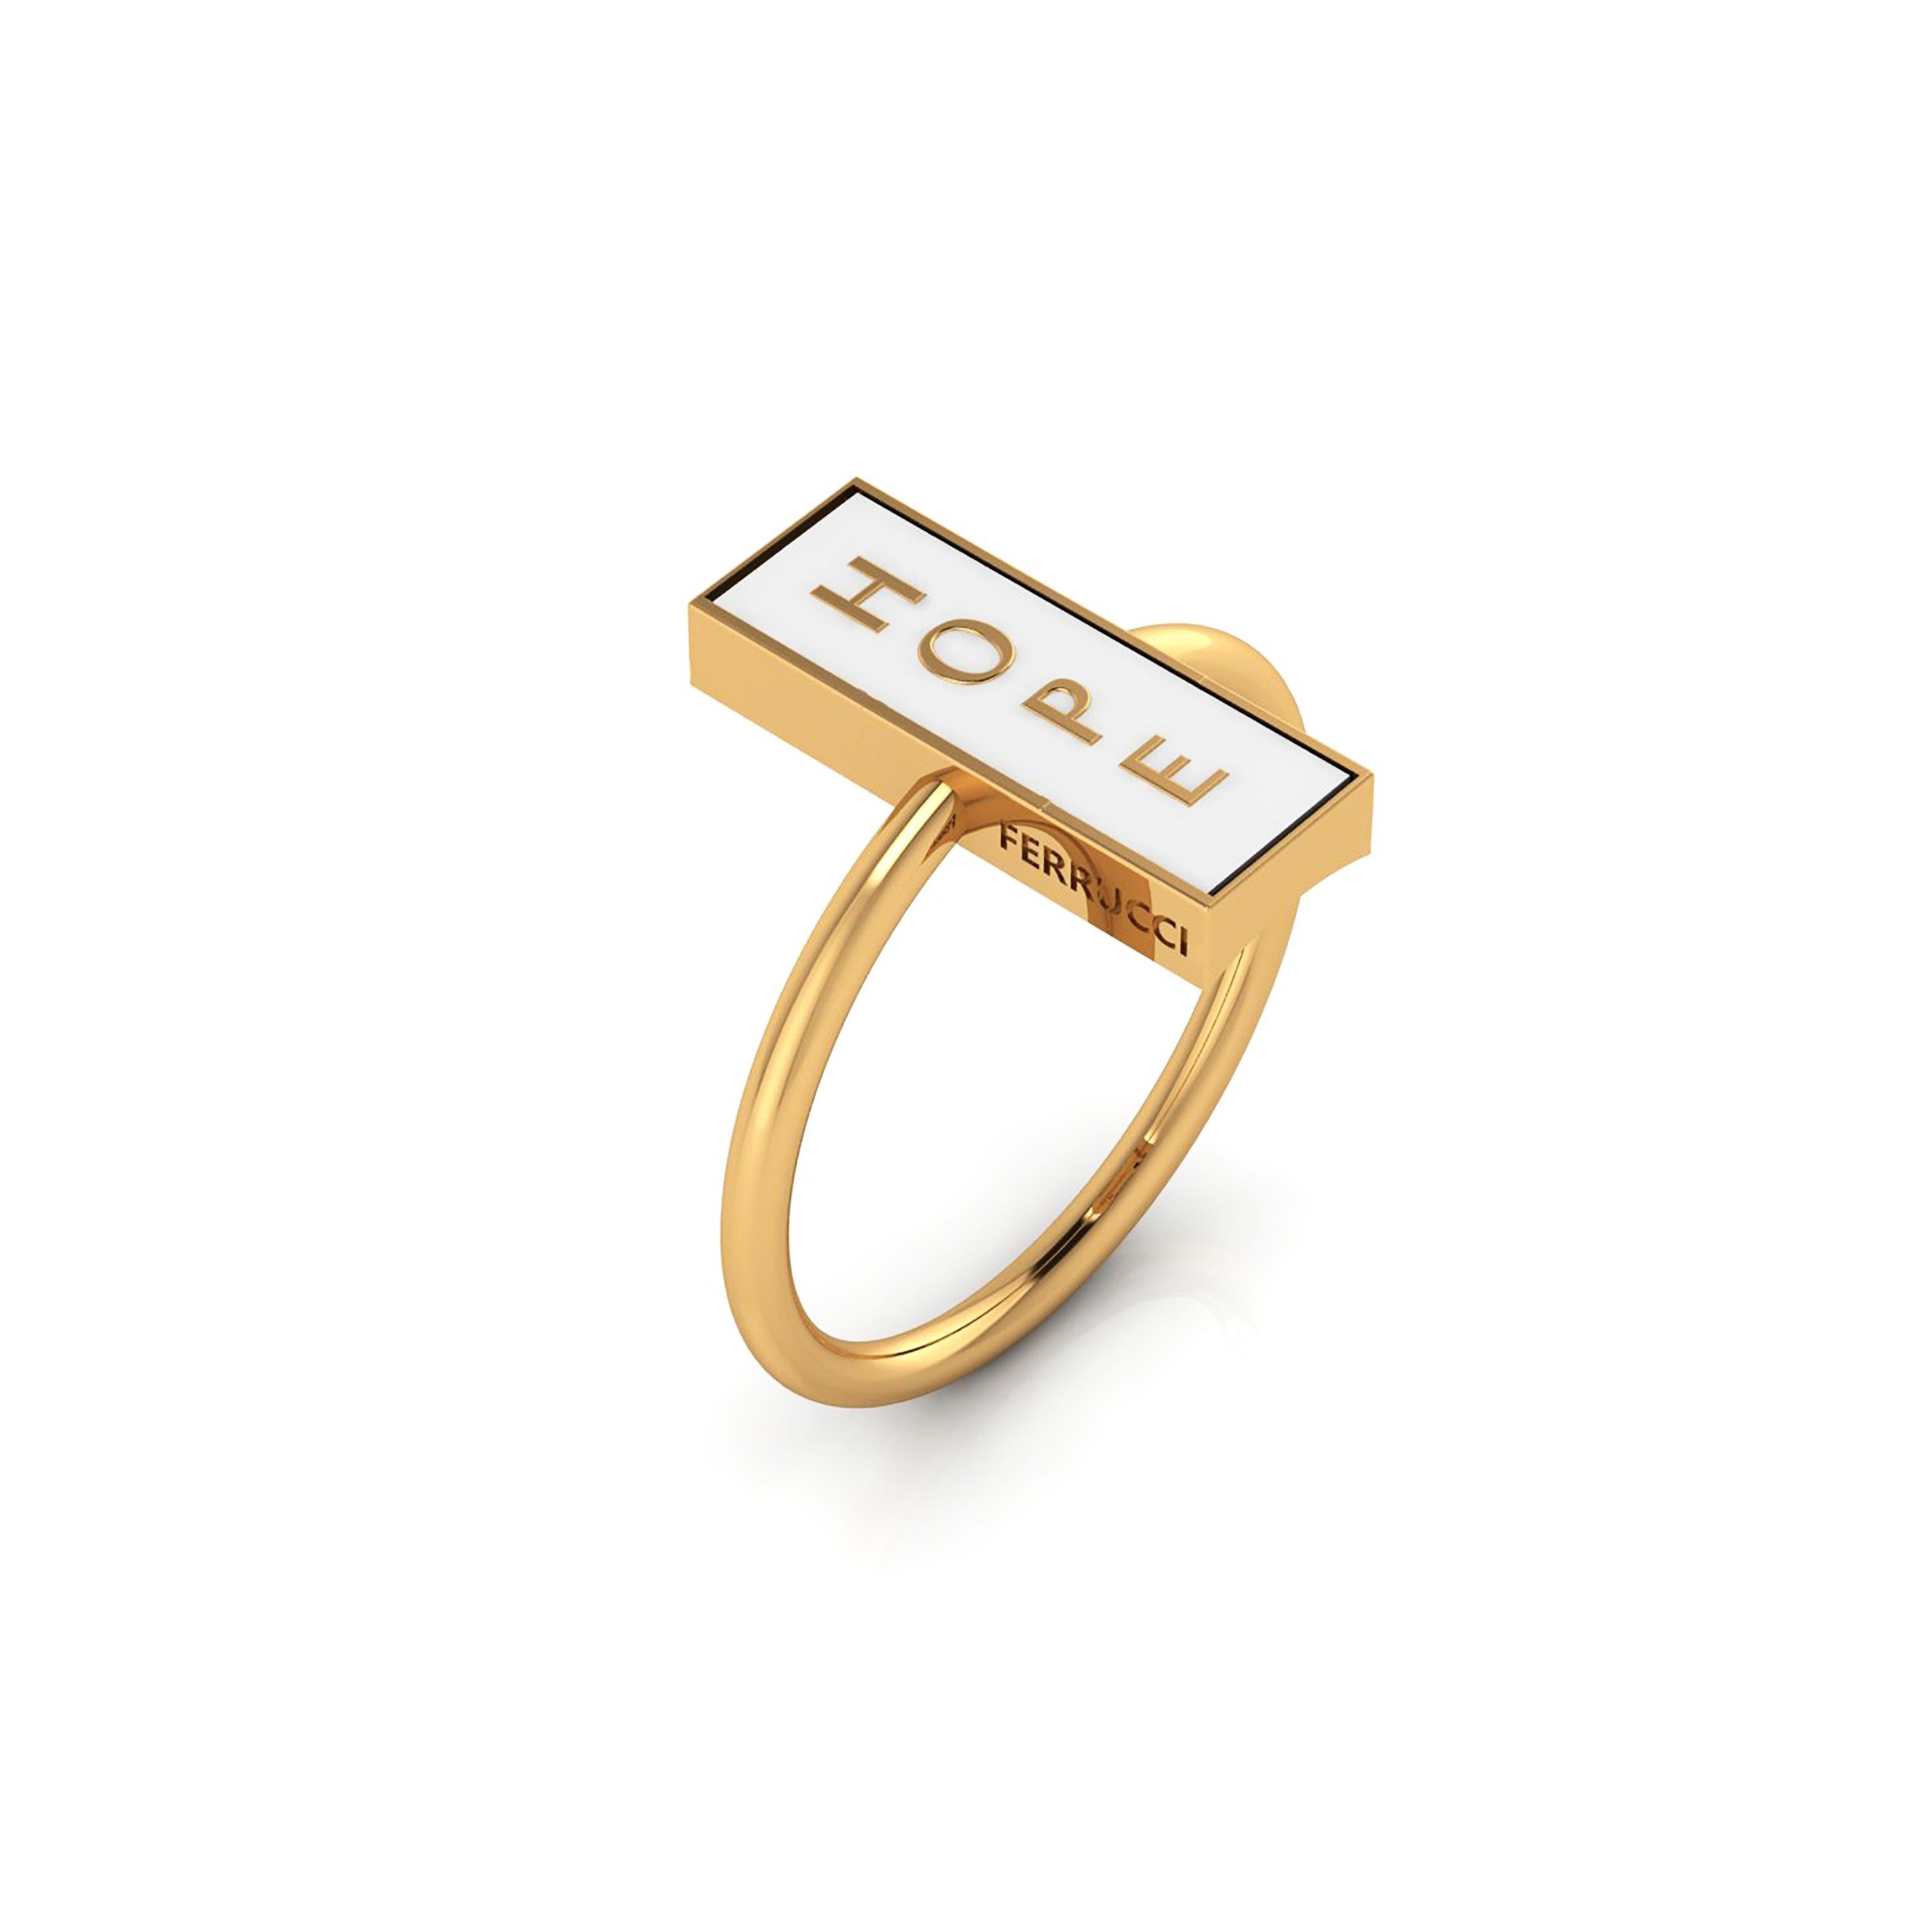 FERRUCCI The Forever Hope weißer Ring, in 18k Gelbgold konzipiert, eine neue Art, mit Ihnen die stilvolle, schöne 18k Gelbgold, ewig in der Zeit, moderne und kühne Formen kombiniert, um ewige Hoffnung zu schaffen
Größe 6, kostenlose Größenanpassung